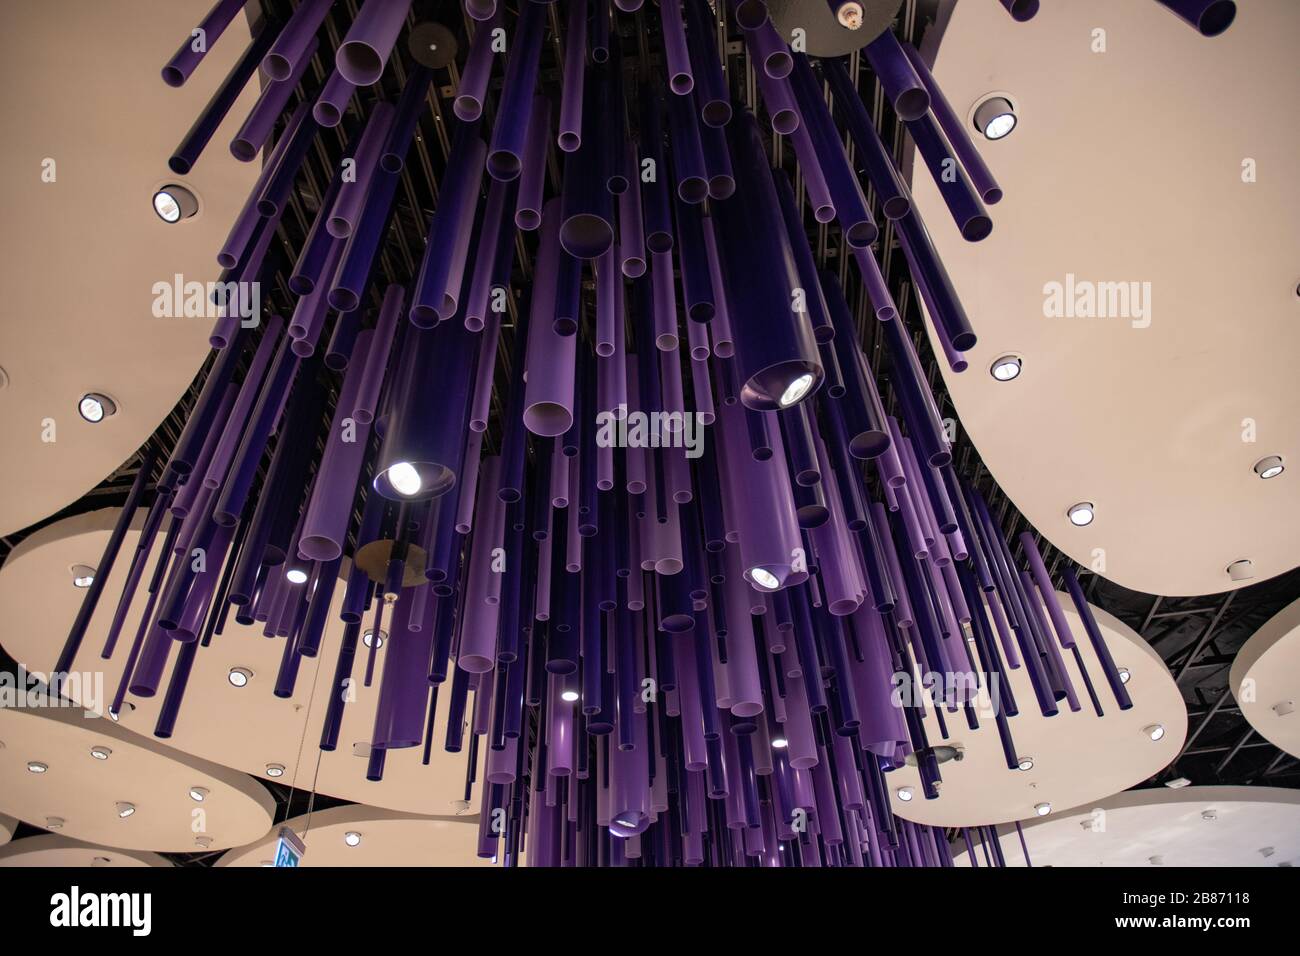 Arrière-plan abstrait de formes géométriques et de lignes dans des tons de violet foncé. Equipement d'éclairage créatif au plafond. Toile de fond futuriste Banque D'Images